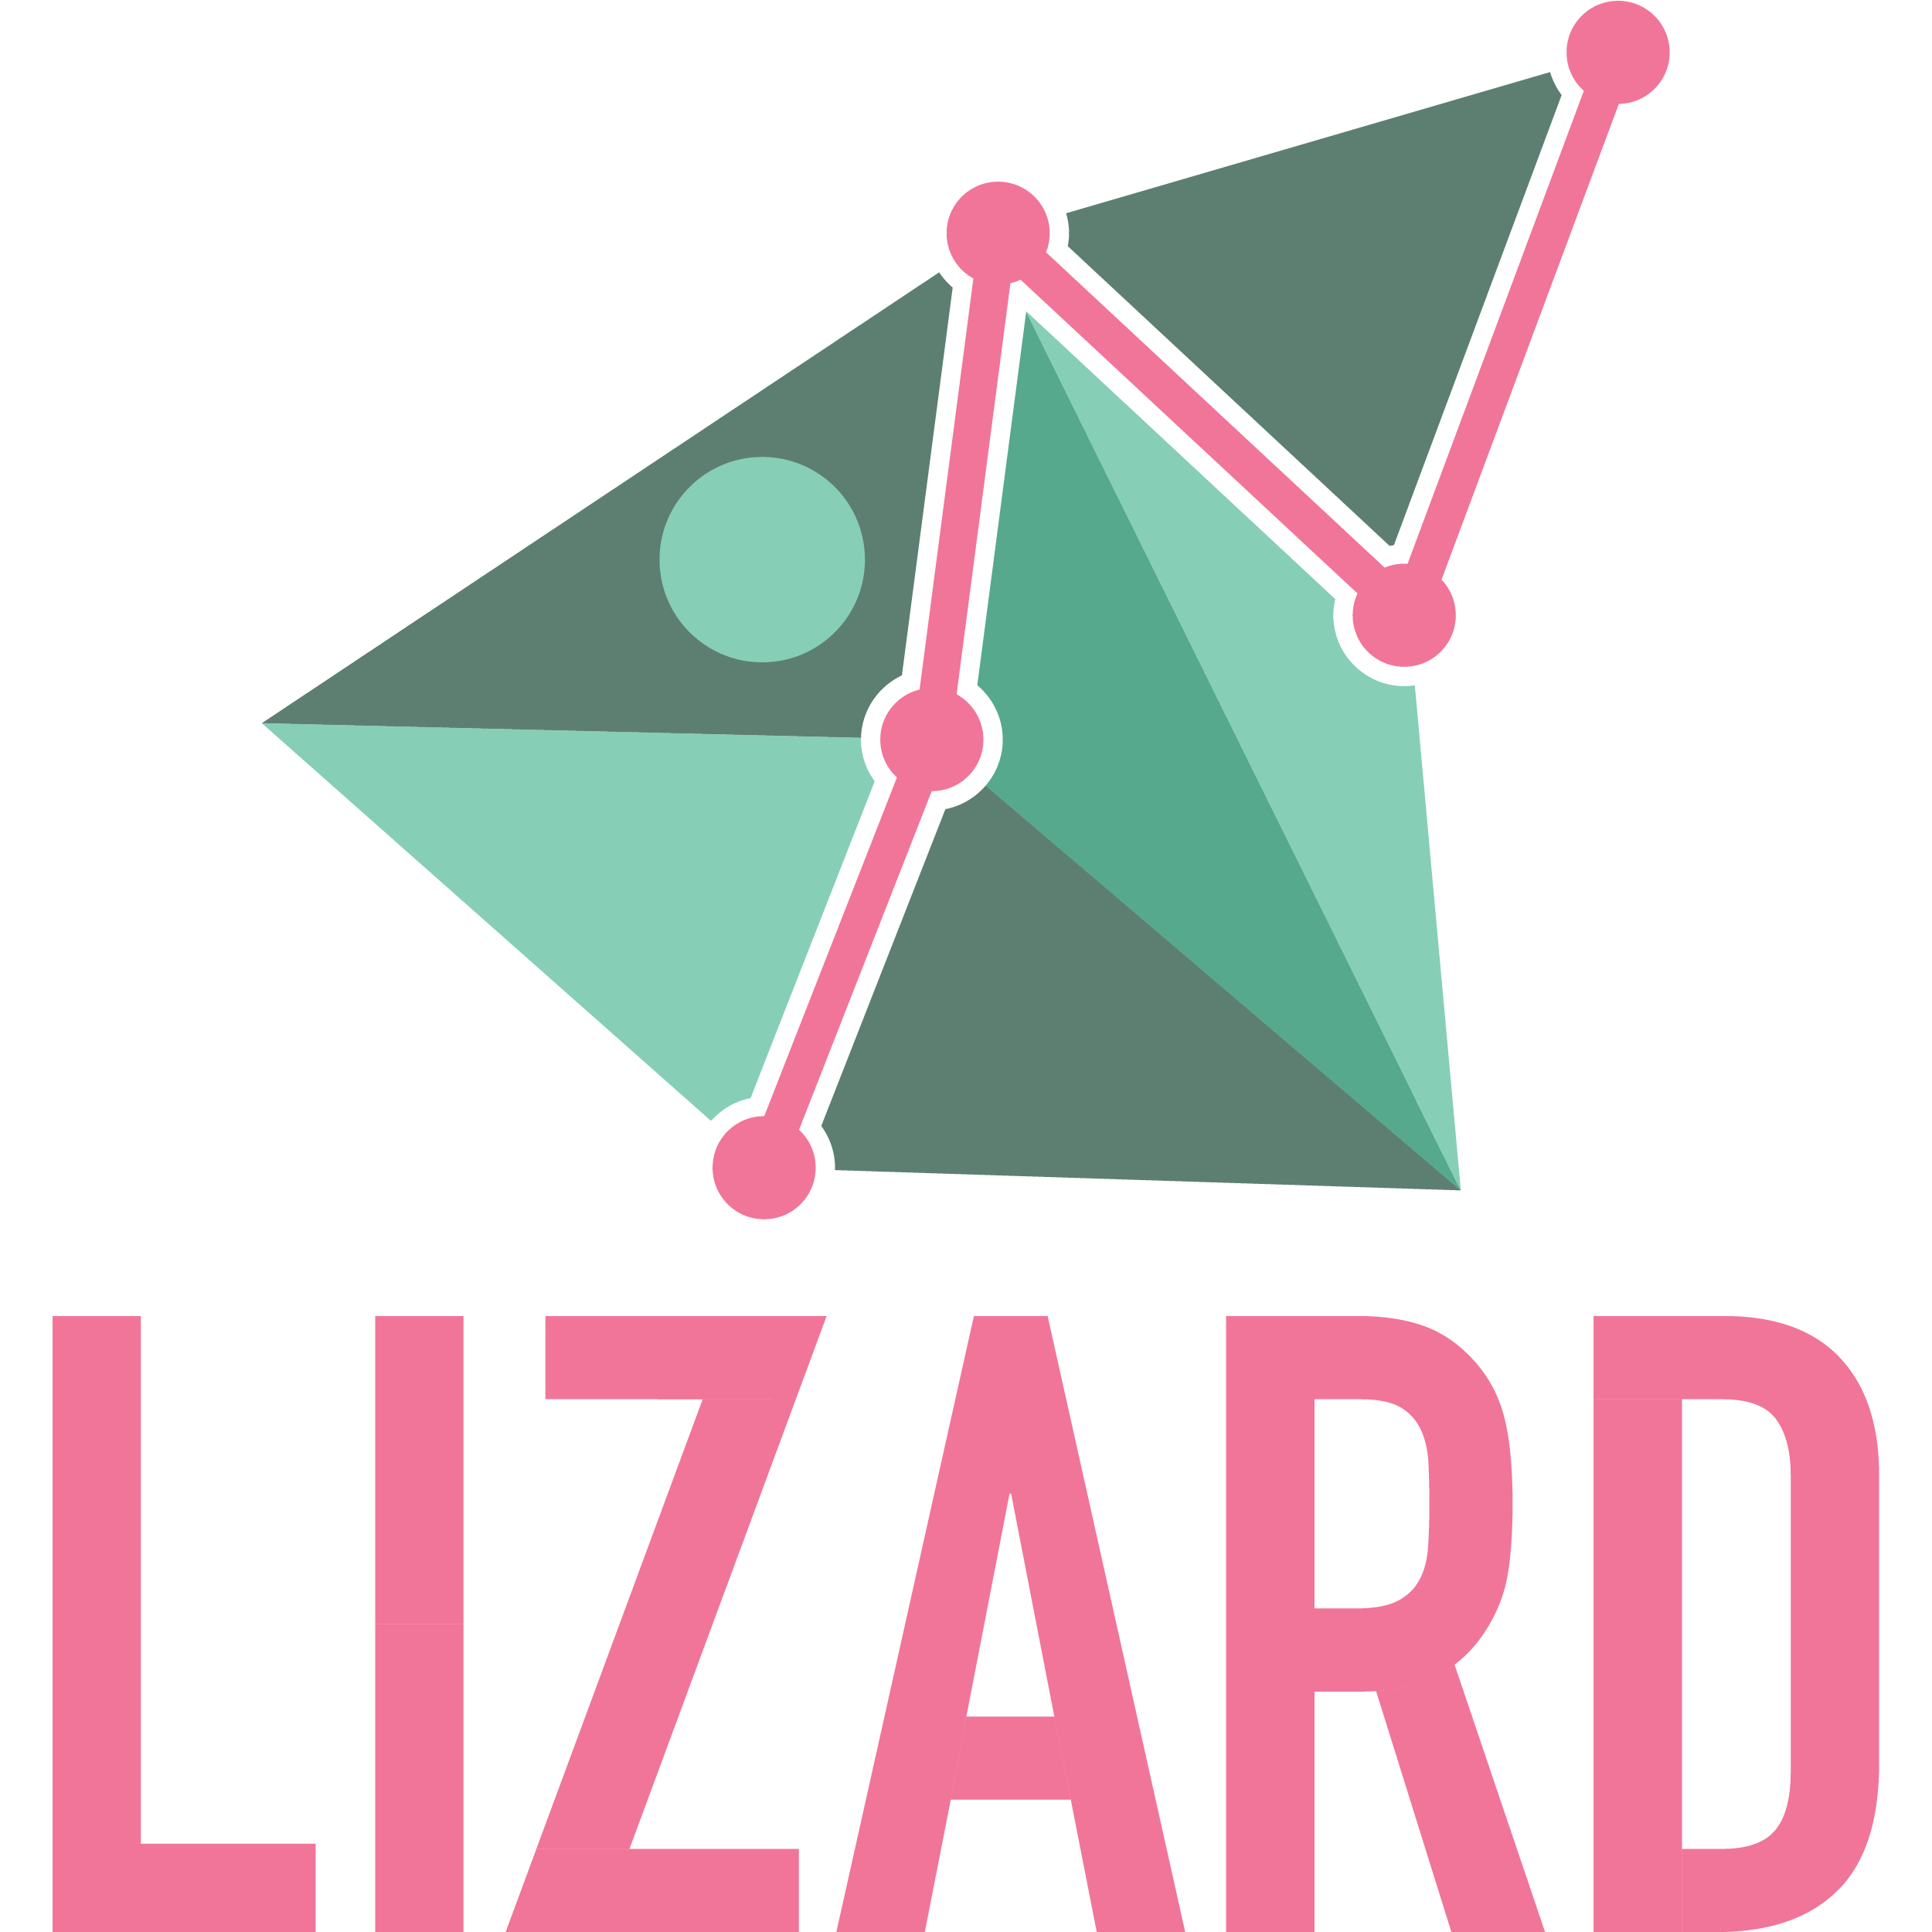 Lizard Marketing - Mint Hill, NC 28227 - (888)296-6579 | ShowMeLocal.com